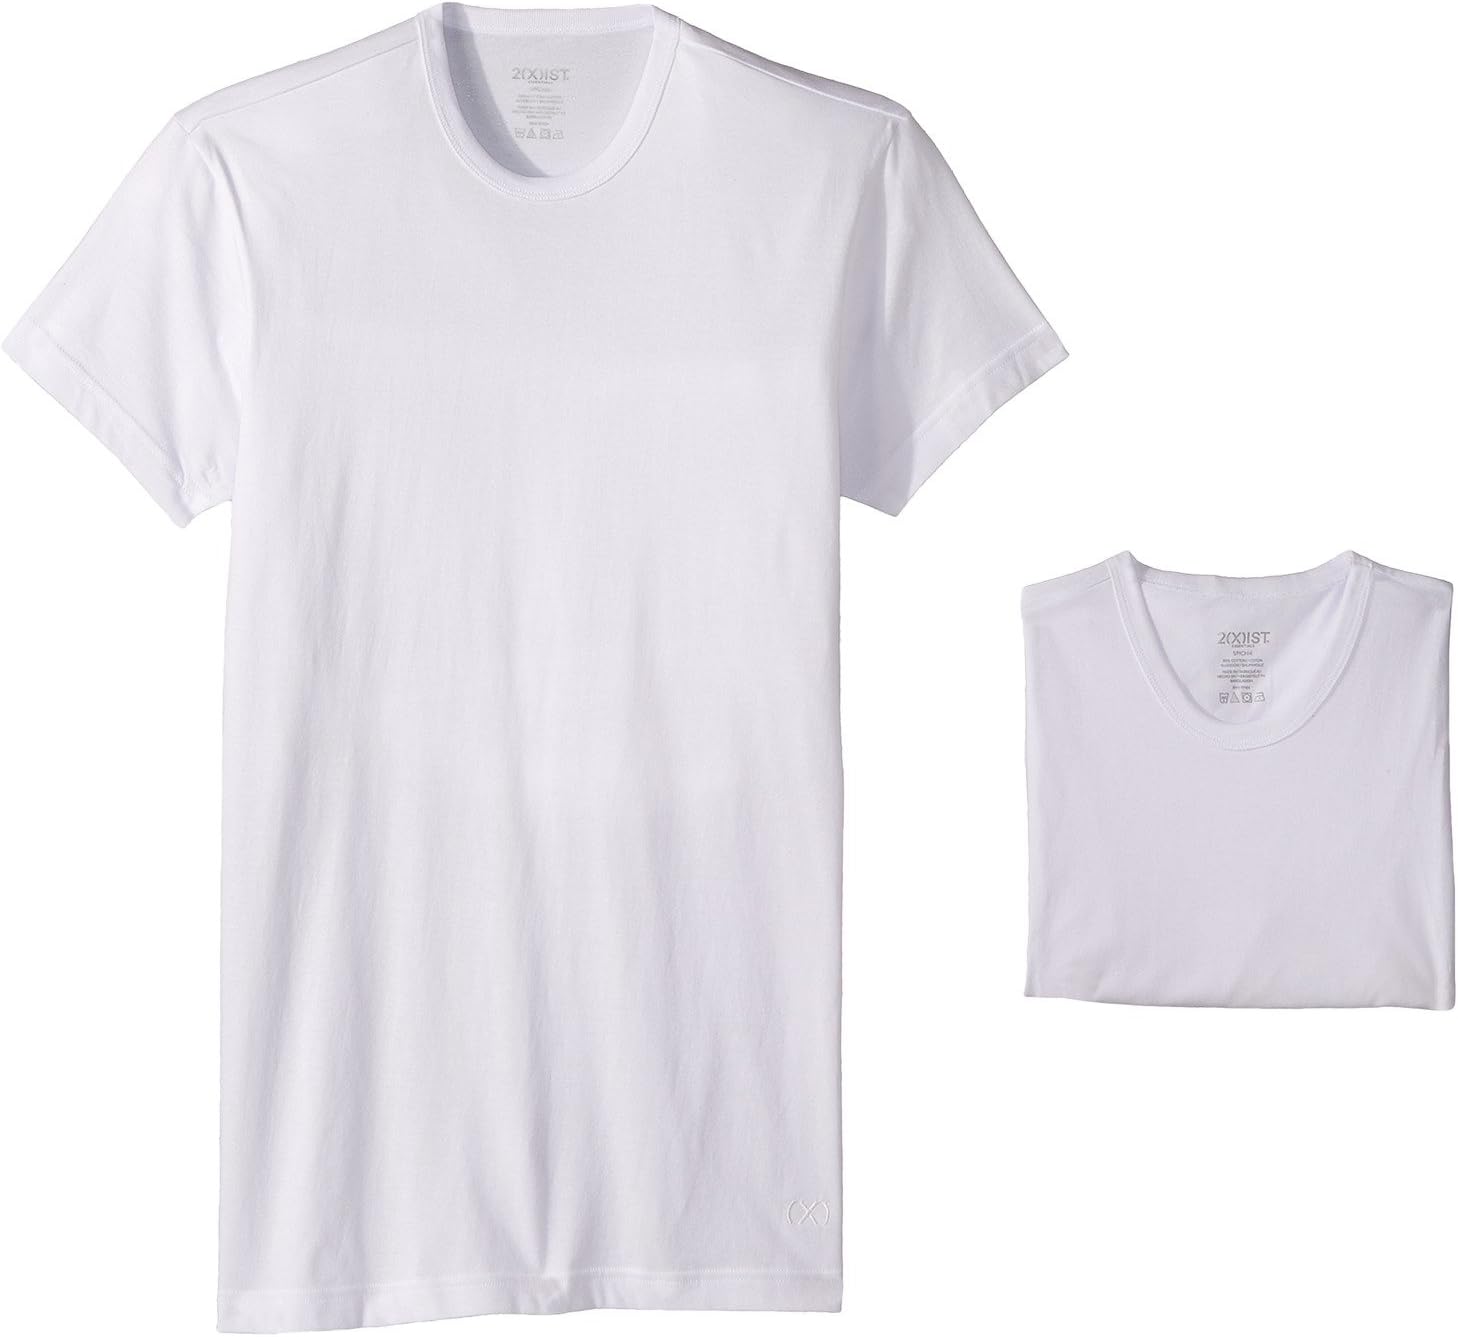 Комплект из 3 футболок узкого кроя ESSENTIAL с круглым вырезом 2(X)IST, цвет White New Logo